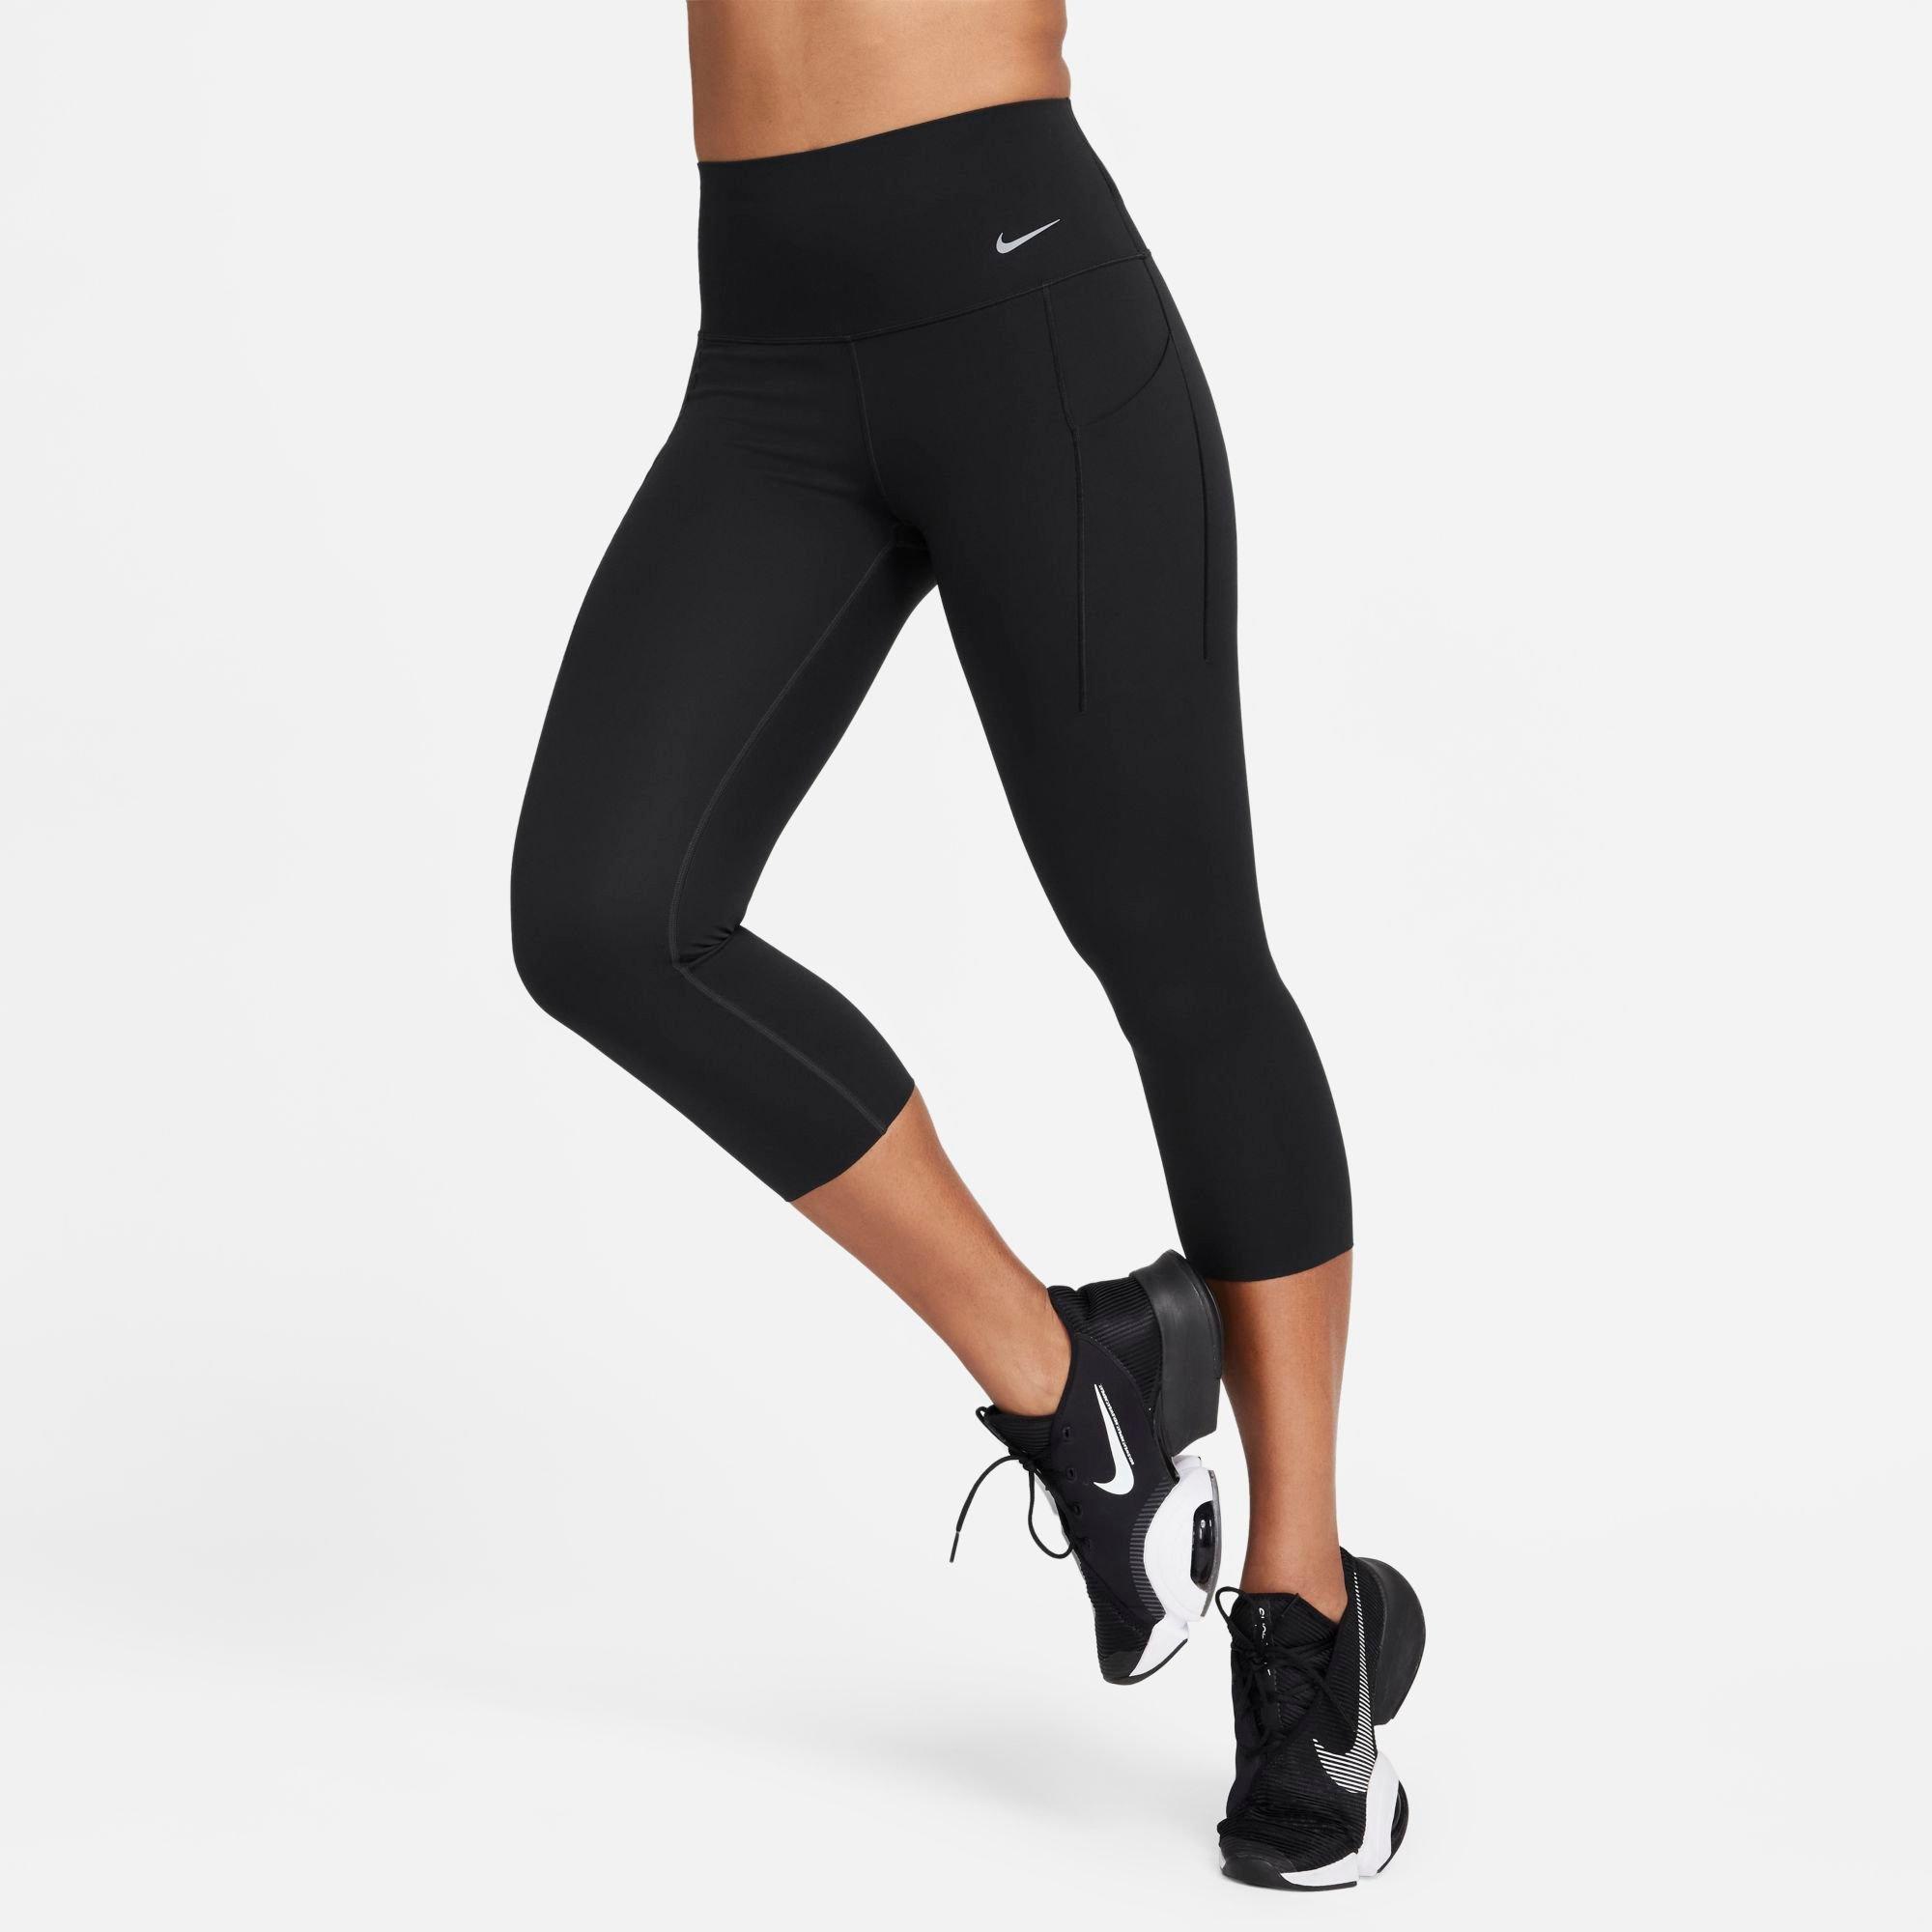 NIKE Nike PRO SCULPT LUX - Leggings - Women's - black/clear